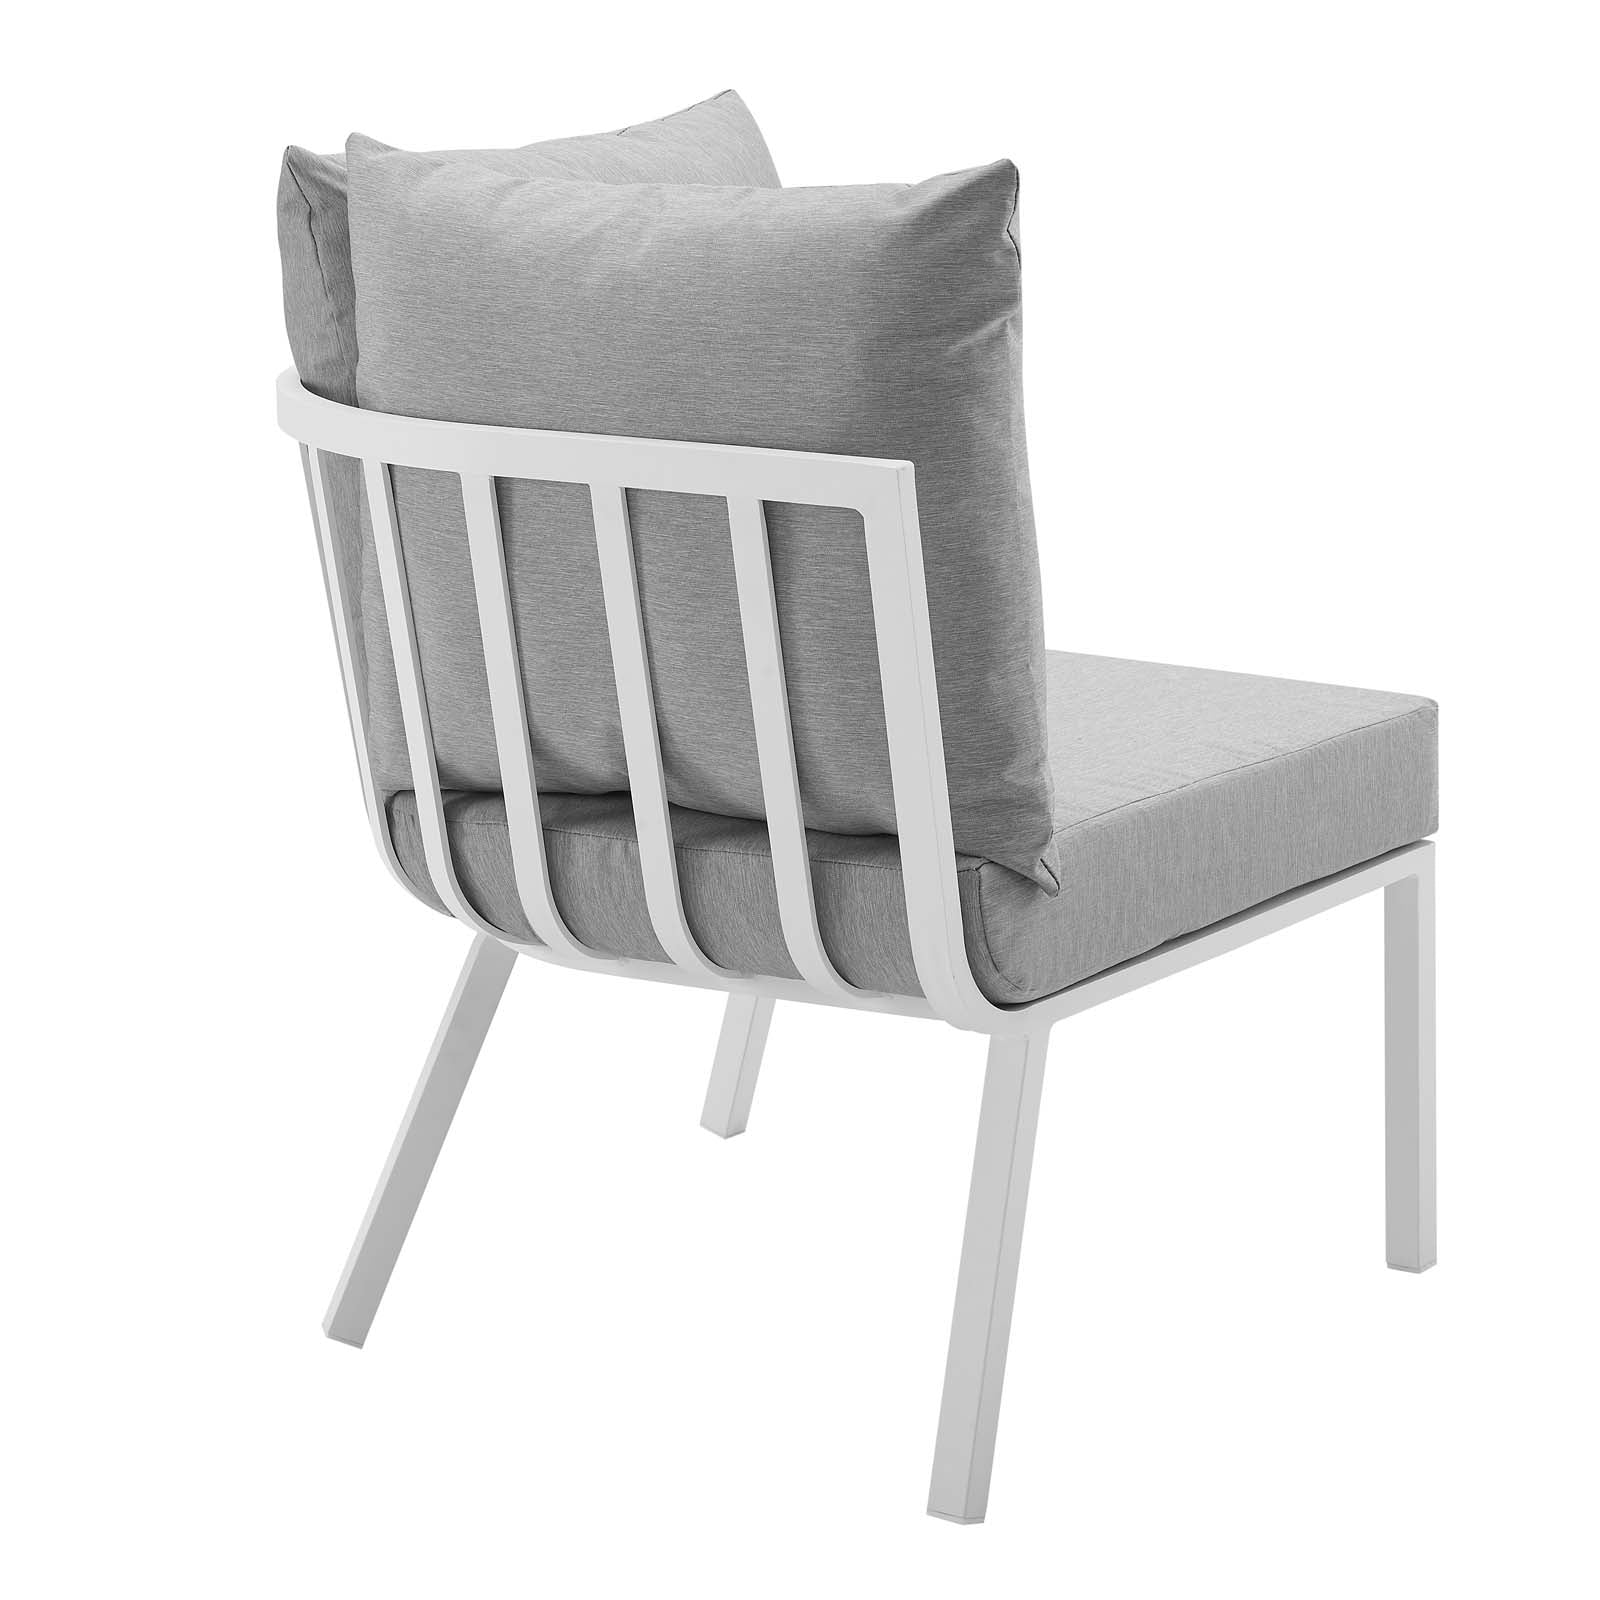 Riverside Outdoor Patio Aluminum Corner Chair